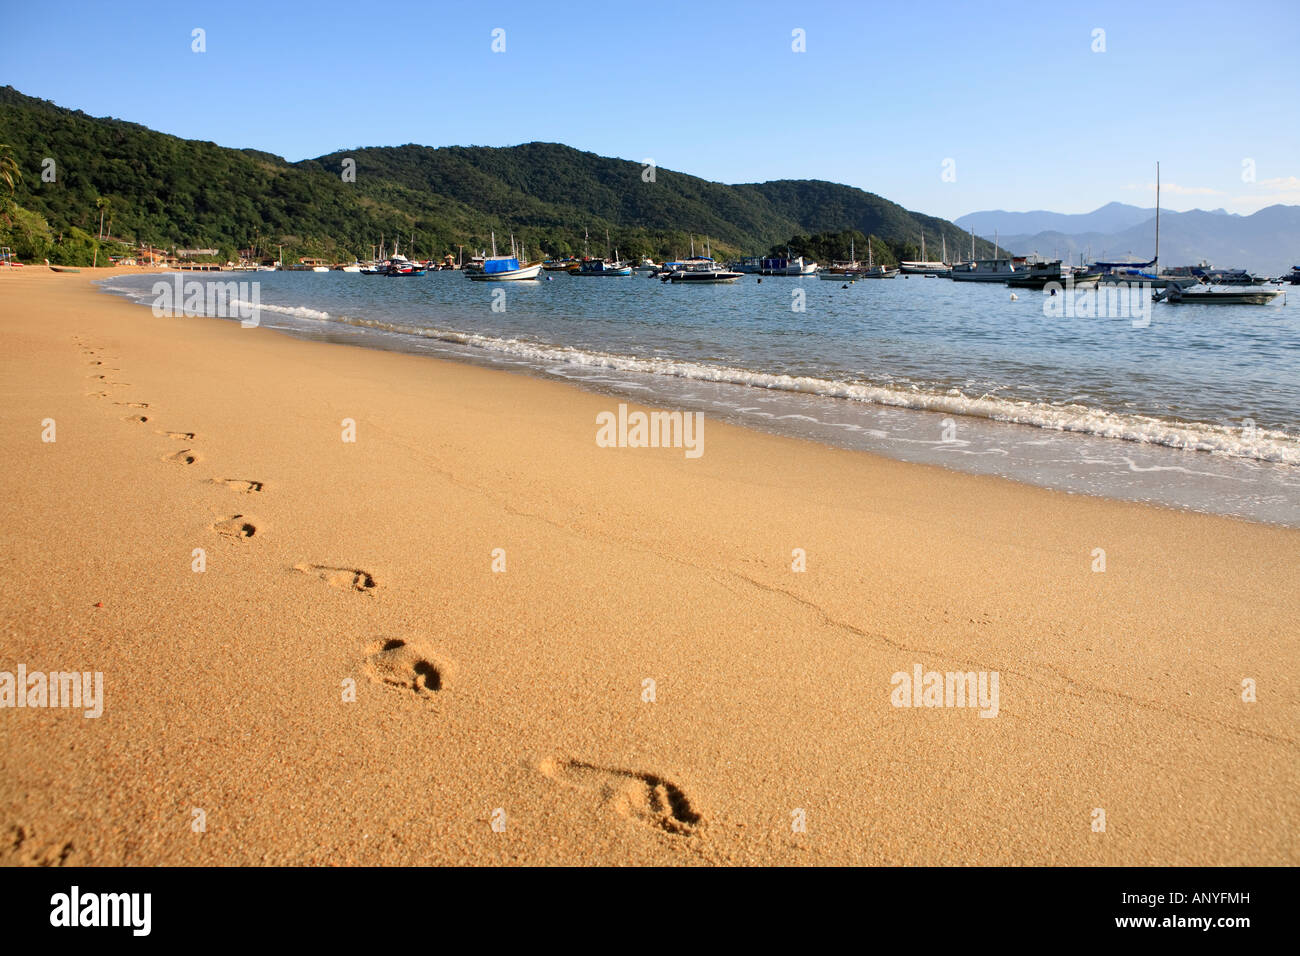 Pedana sulla sabbia della spiaggia abraao nella bellissima isola di Ilha Grande vicino a Rio de Janeiro in Brasile Foto Stock